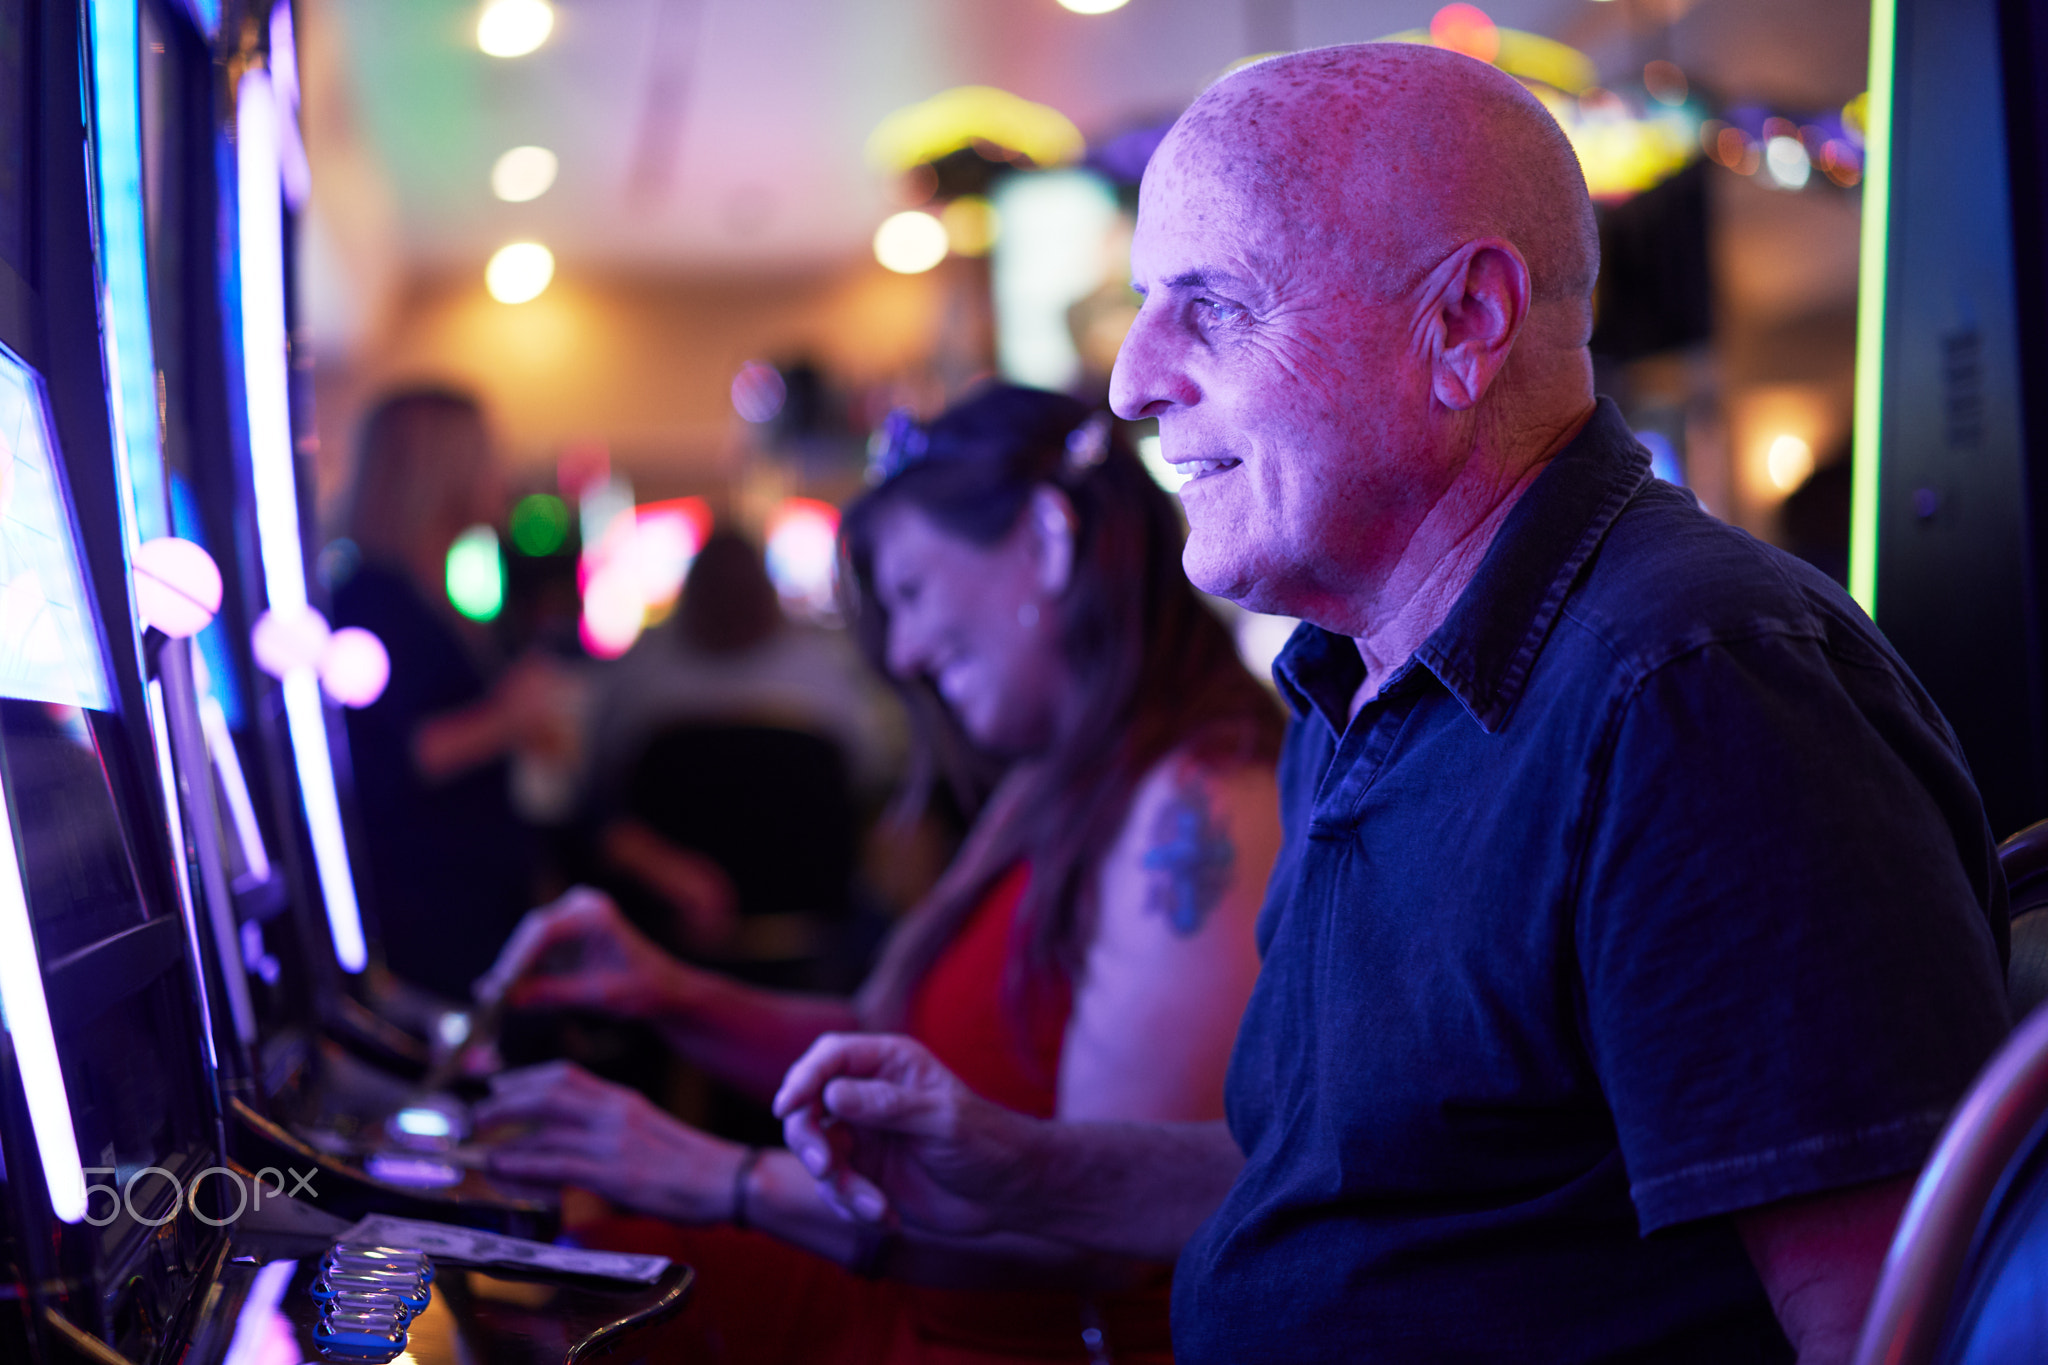 elderly tourist playing slot machines and gambling in casino